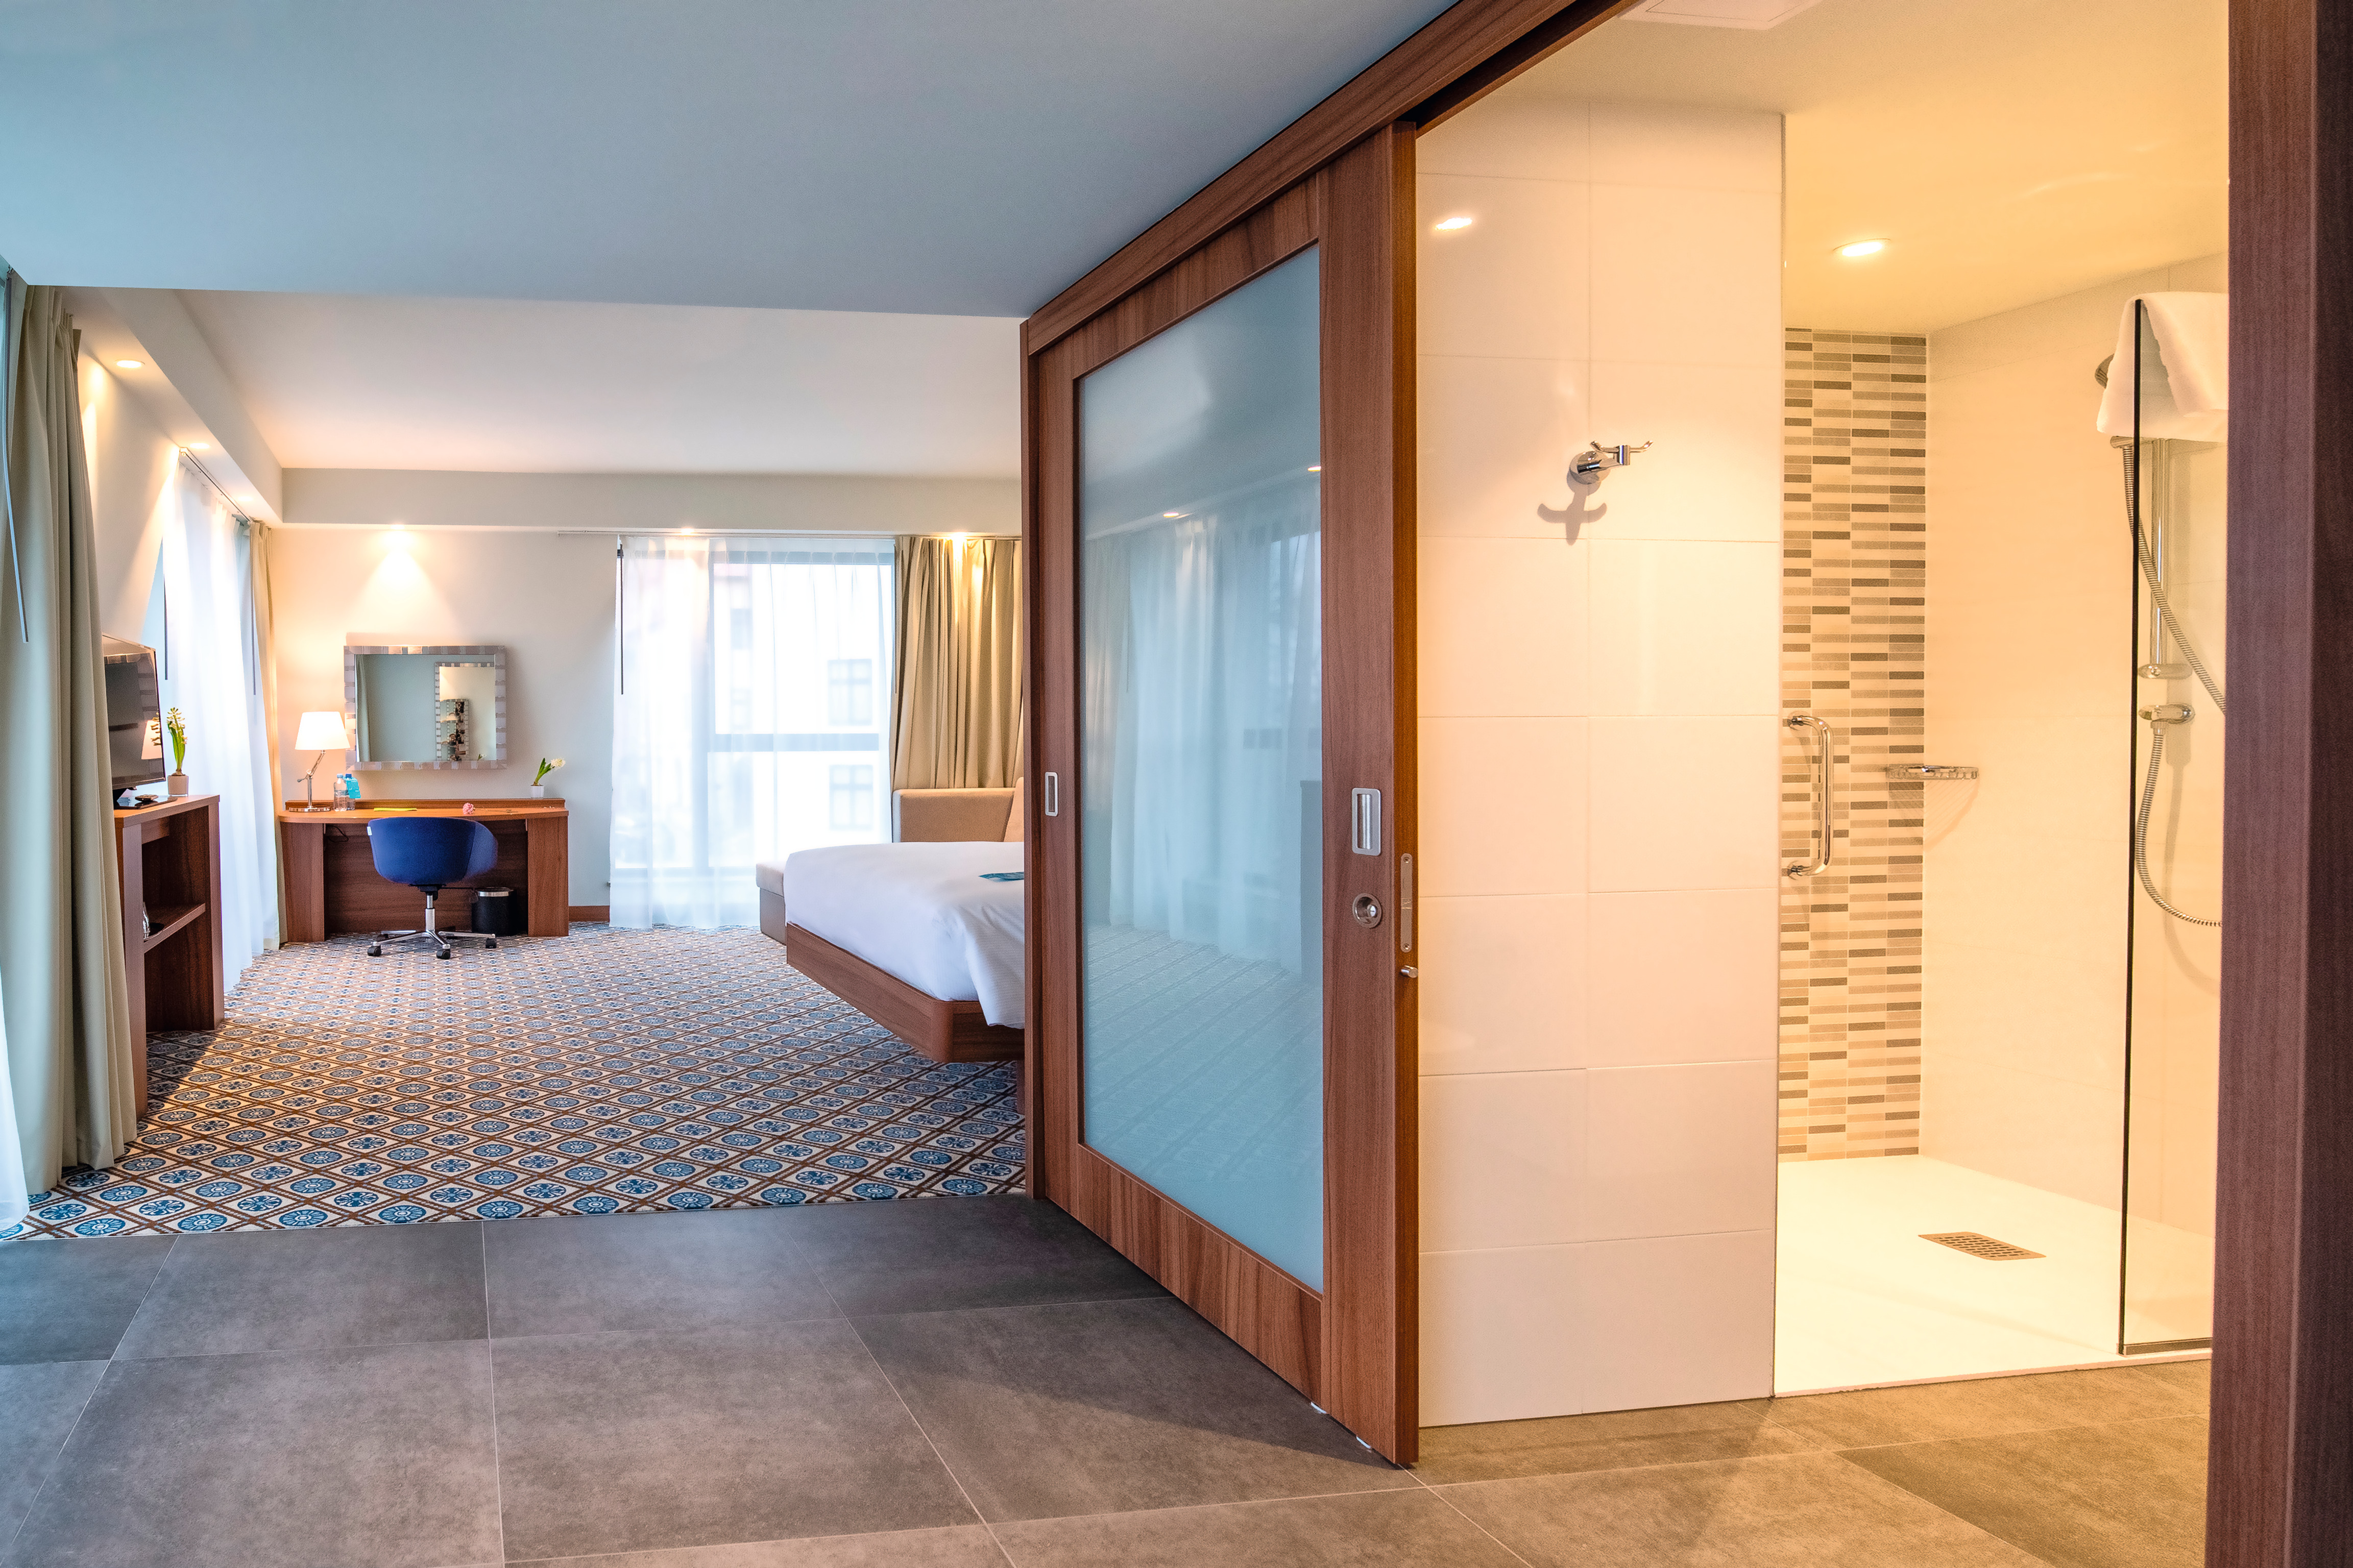 O décor H3734 ST9 Nogueira de Borgonha natural é utilizado nos quartos do hotel para criar um visual moderno.